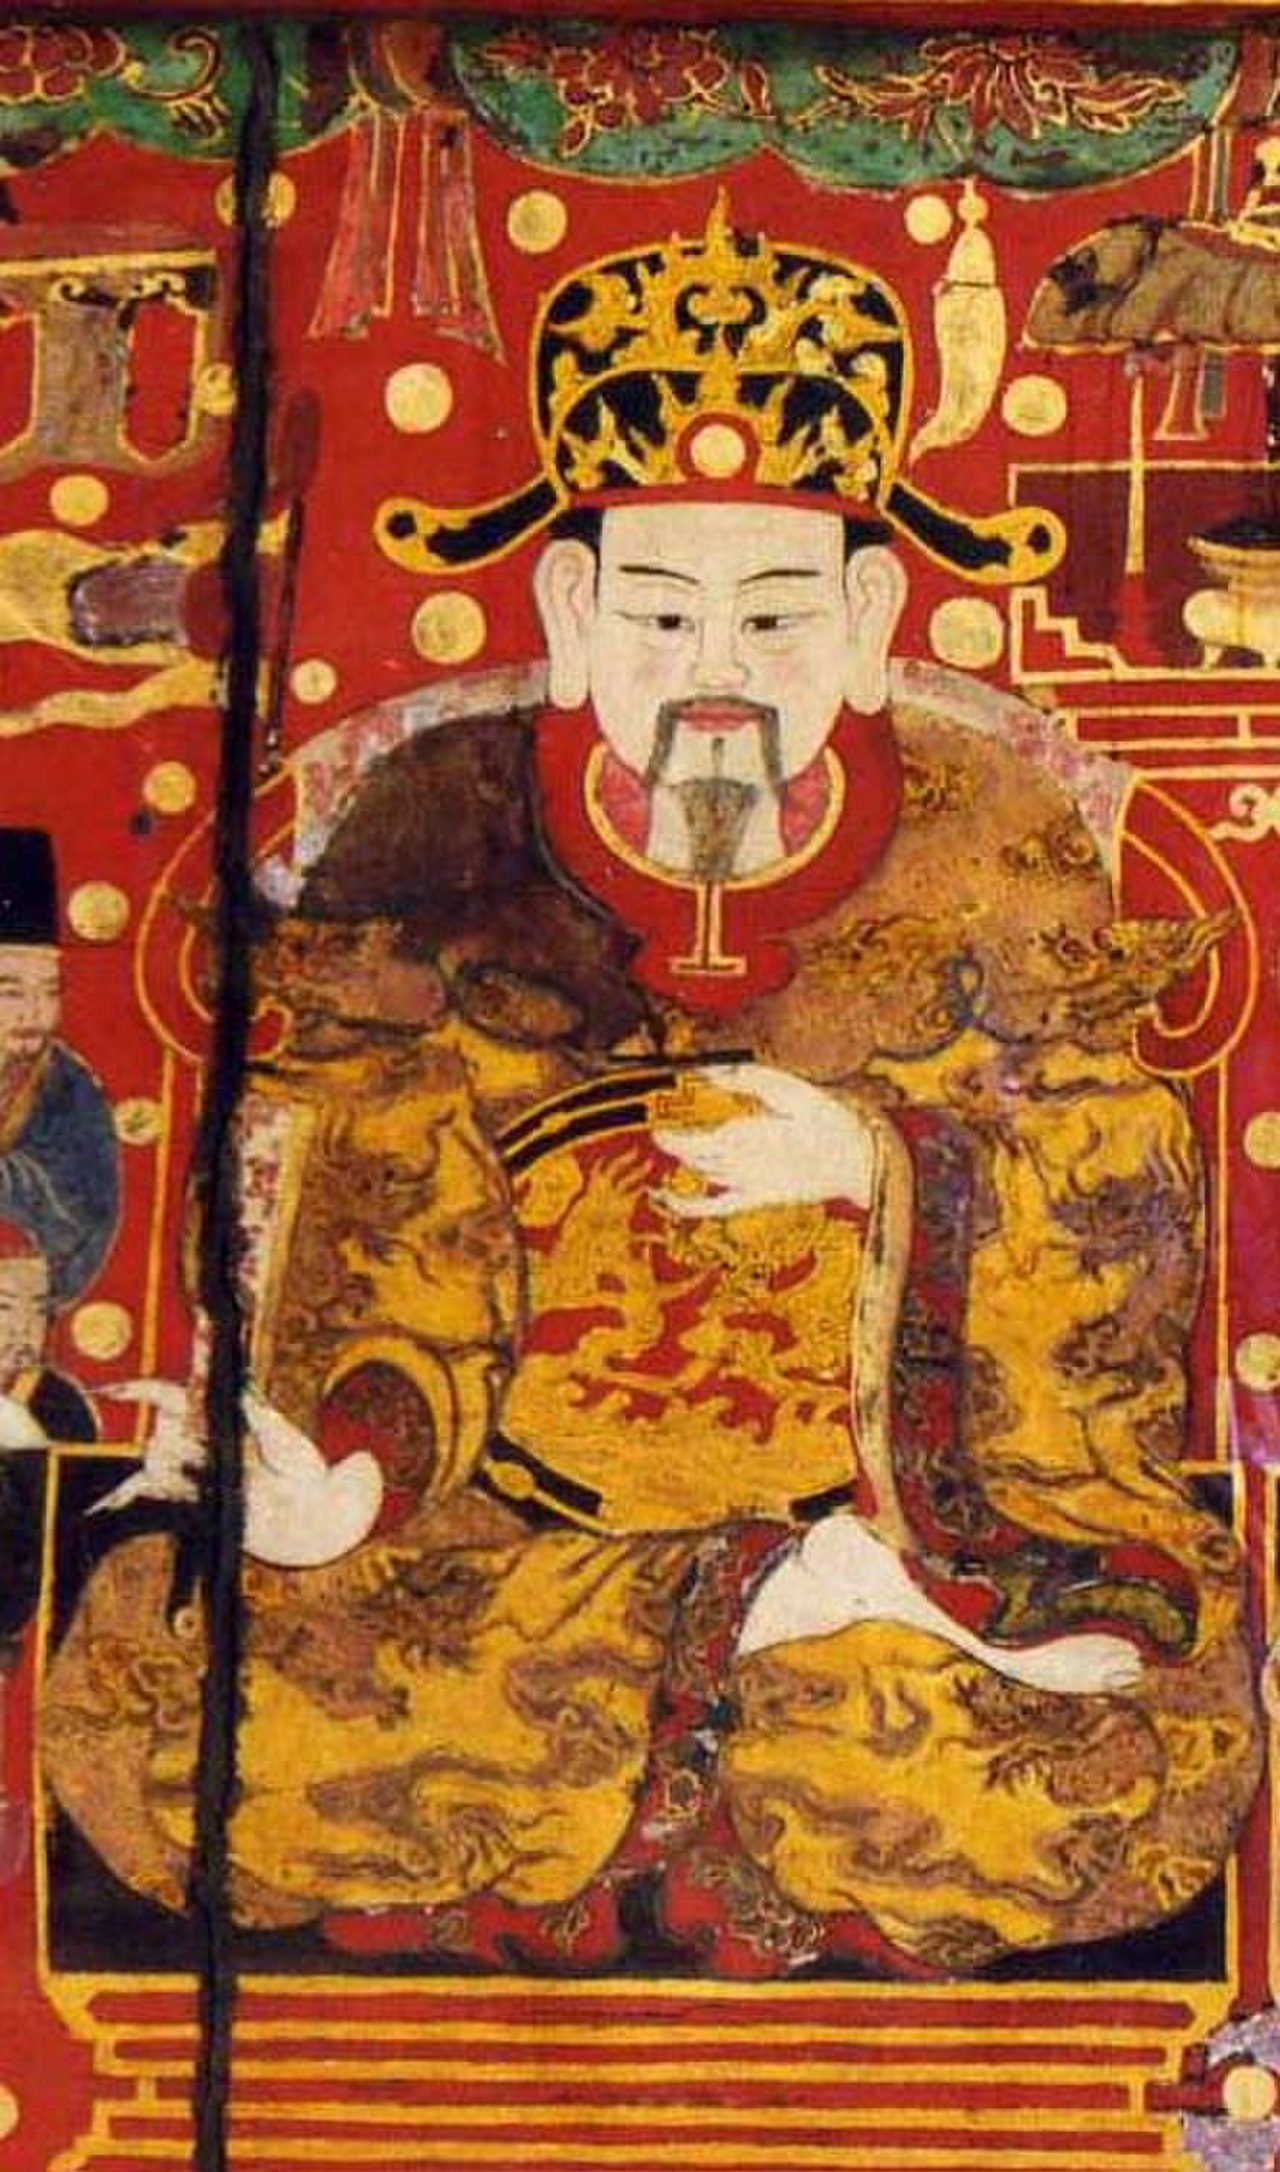 Emperor Ly Nam De.jpg